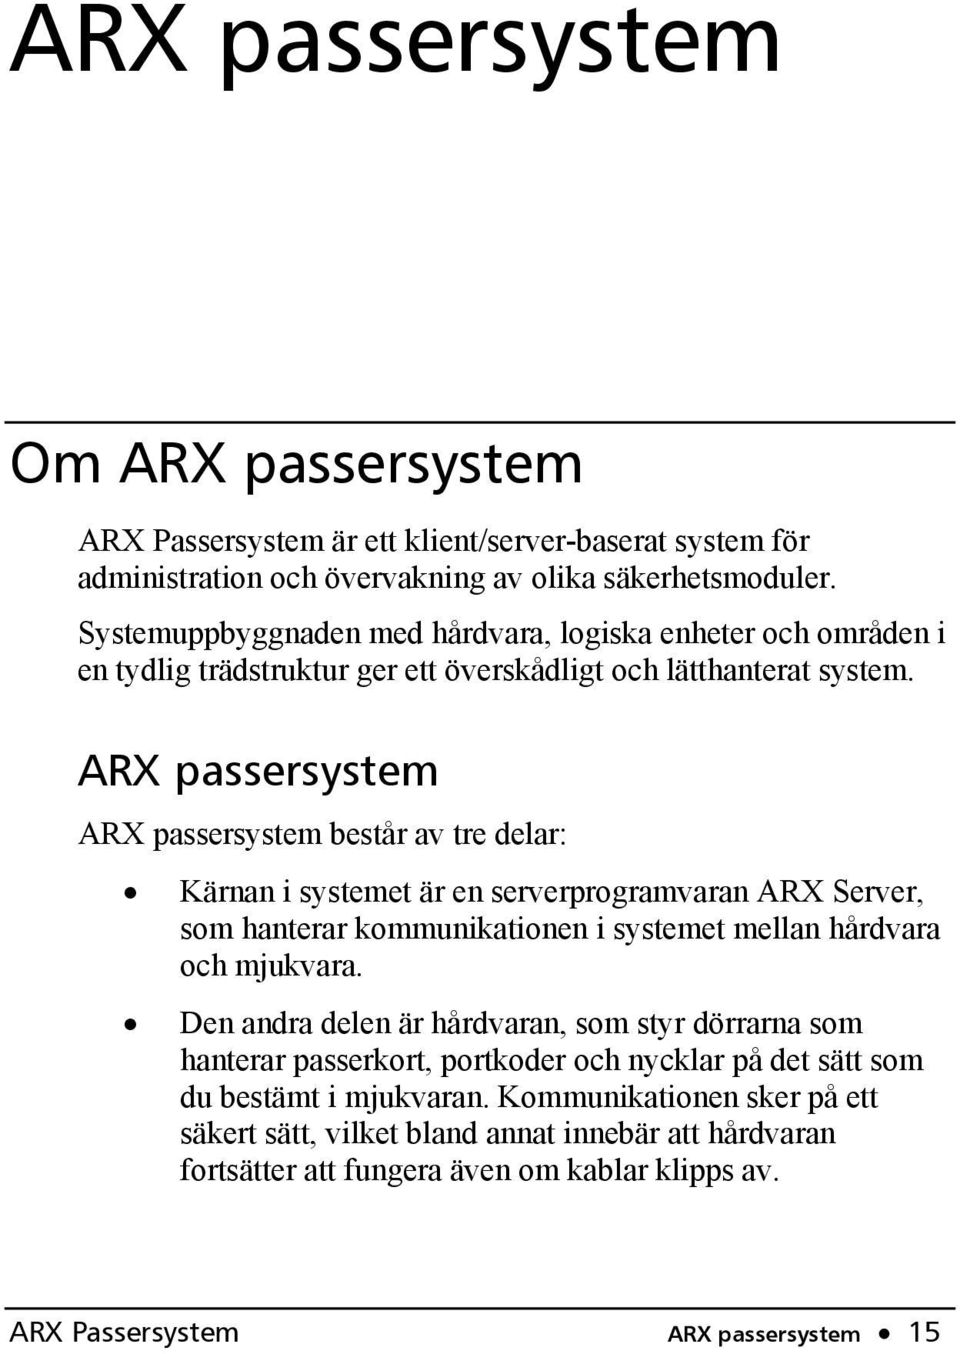 ARX passersystem ARX passersystem består av tre delar: Kärnan i systemet är en serverprogramvaran ARX Server, som hanterar kommunikationen i systemet mellan hårdvara och mjukvara.